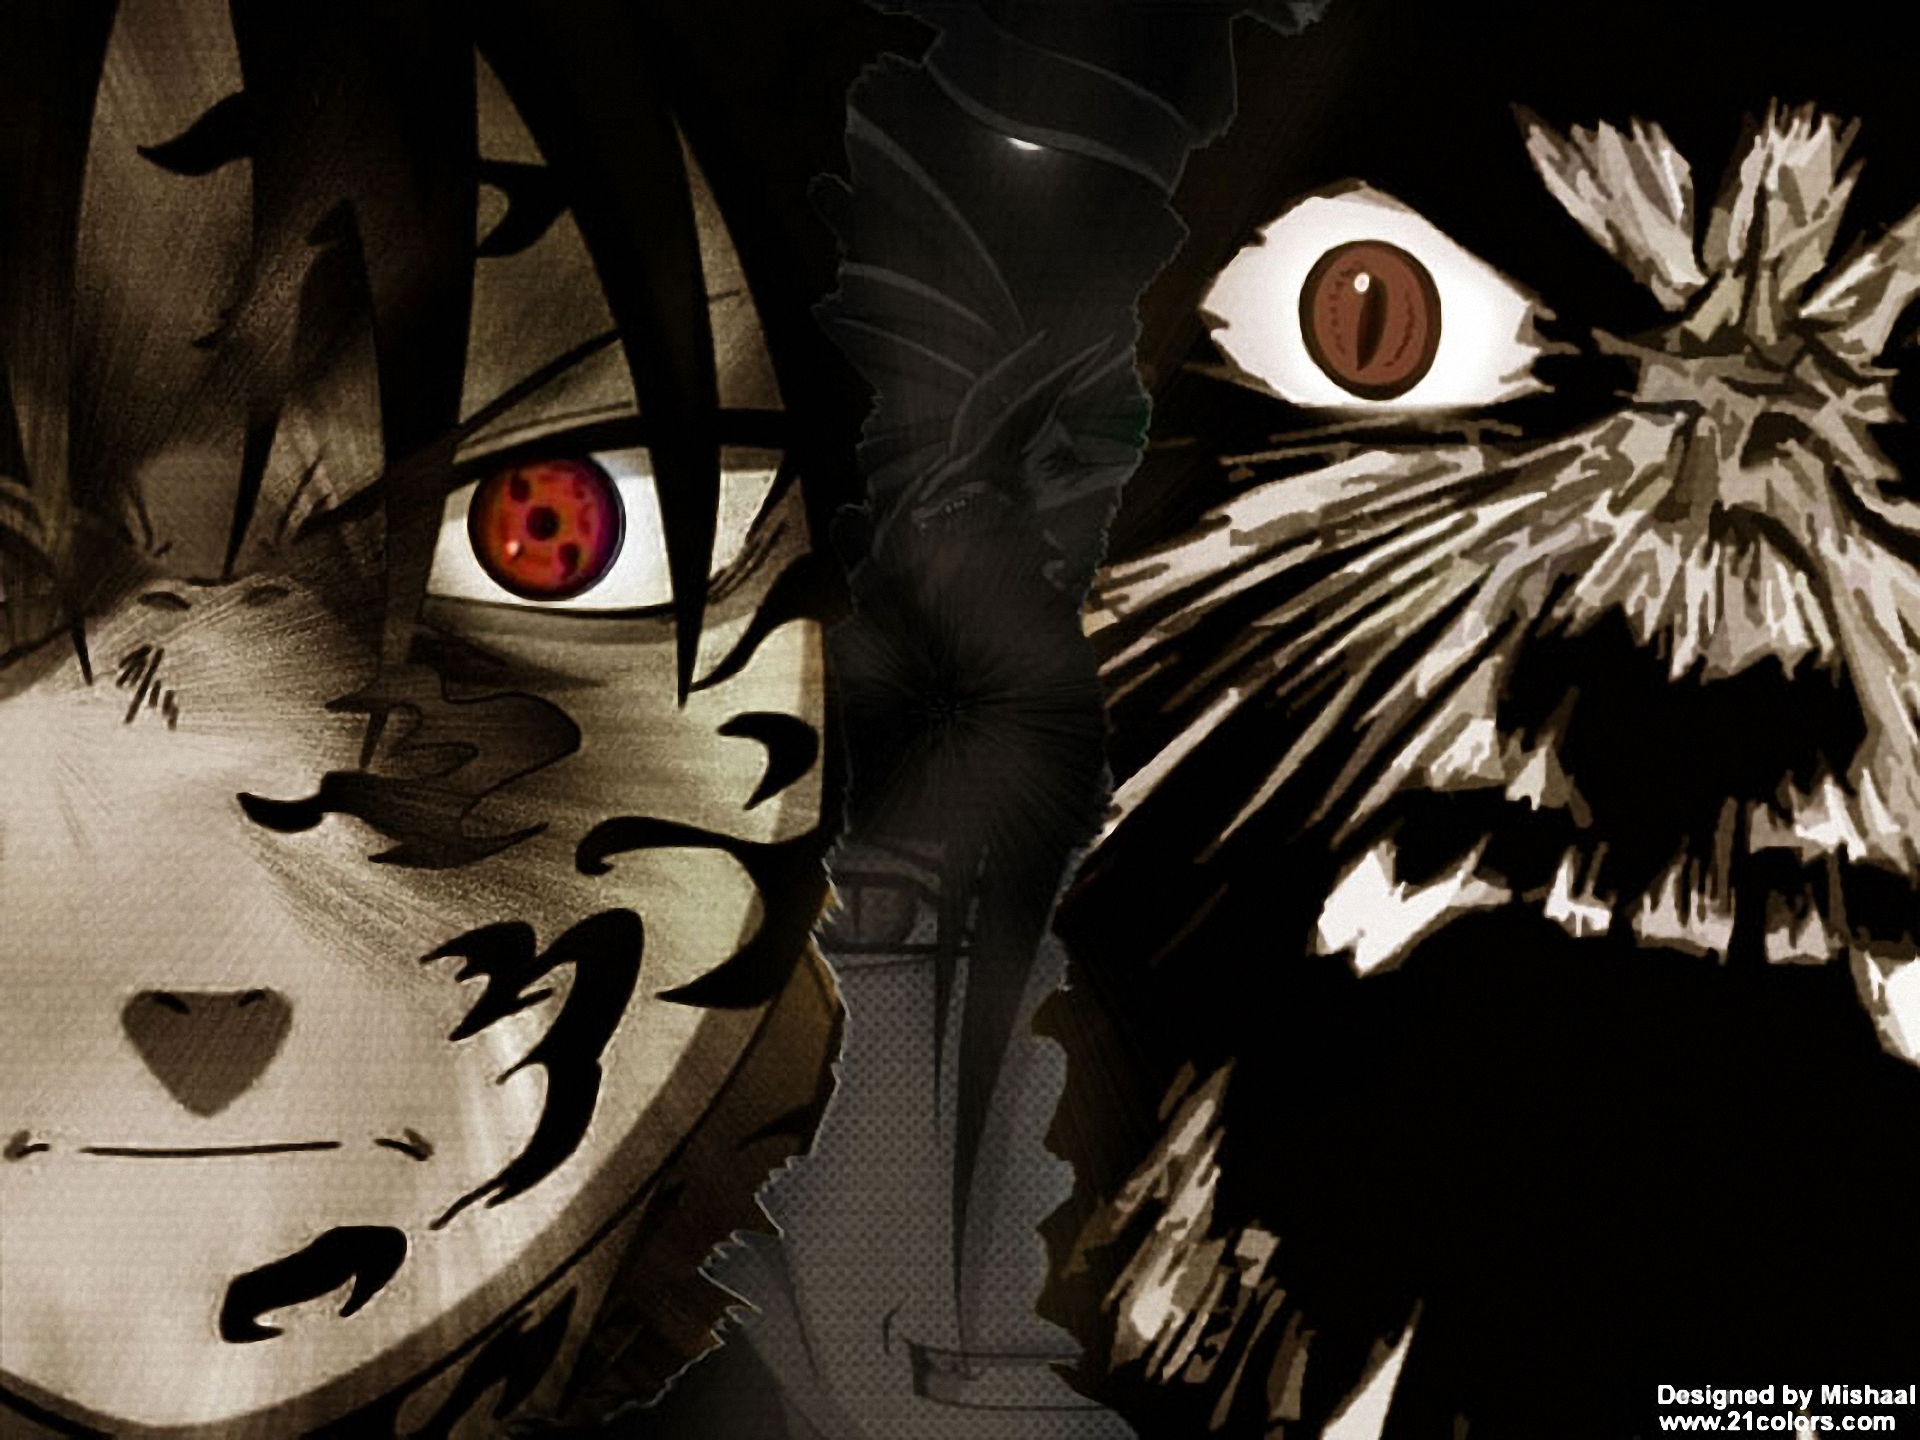 Download mobile wallpaper Anime, Naruto, Naruto Uzumaki, Sasuke Uchiha for free.